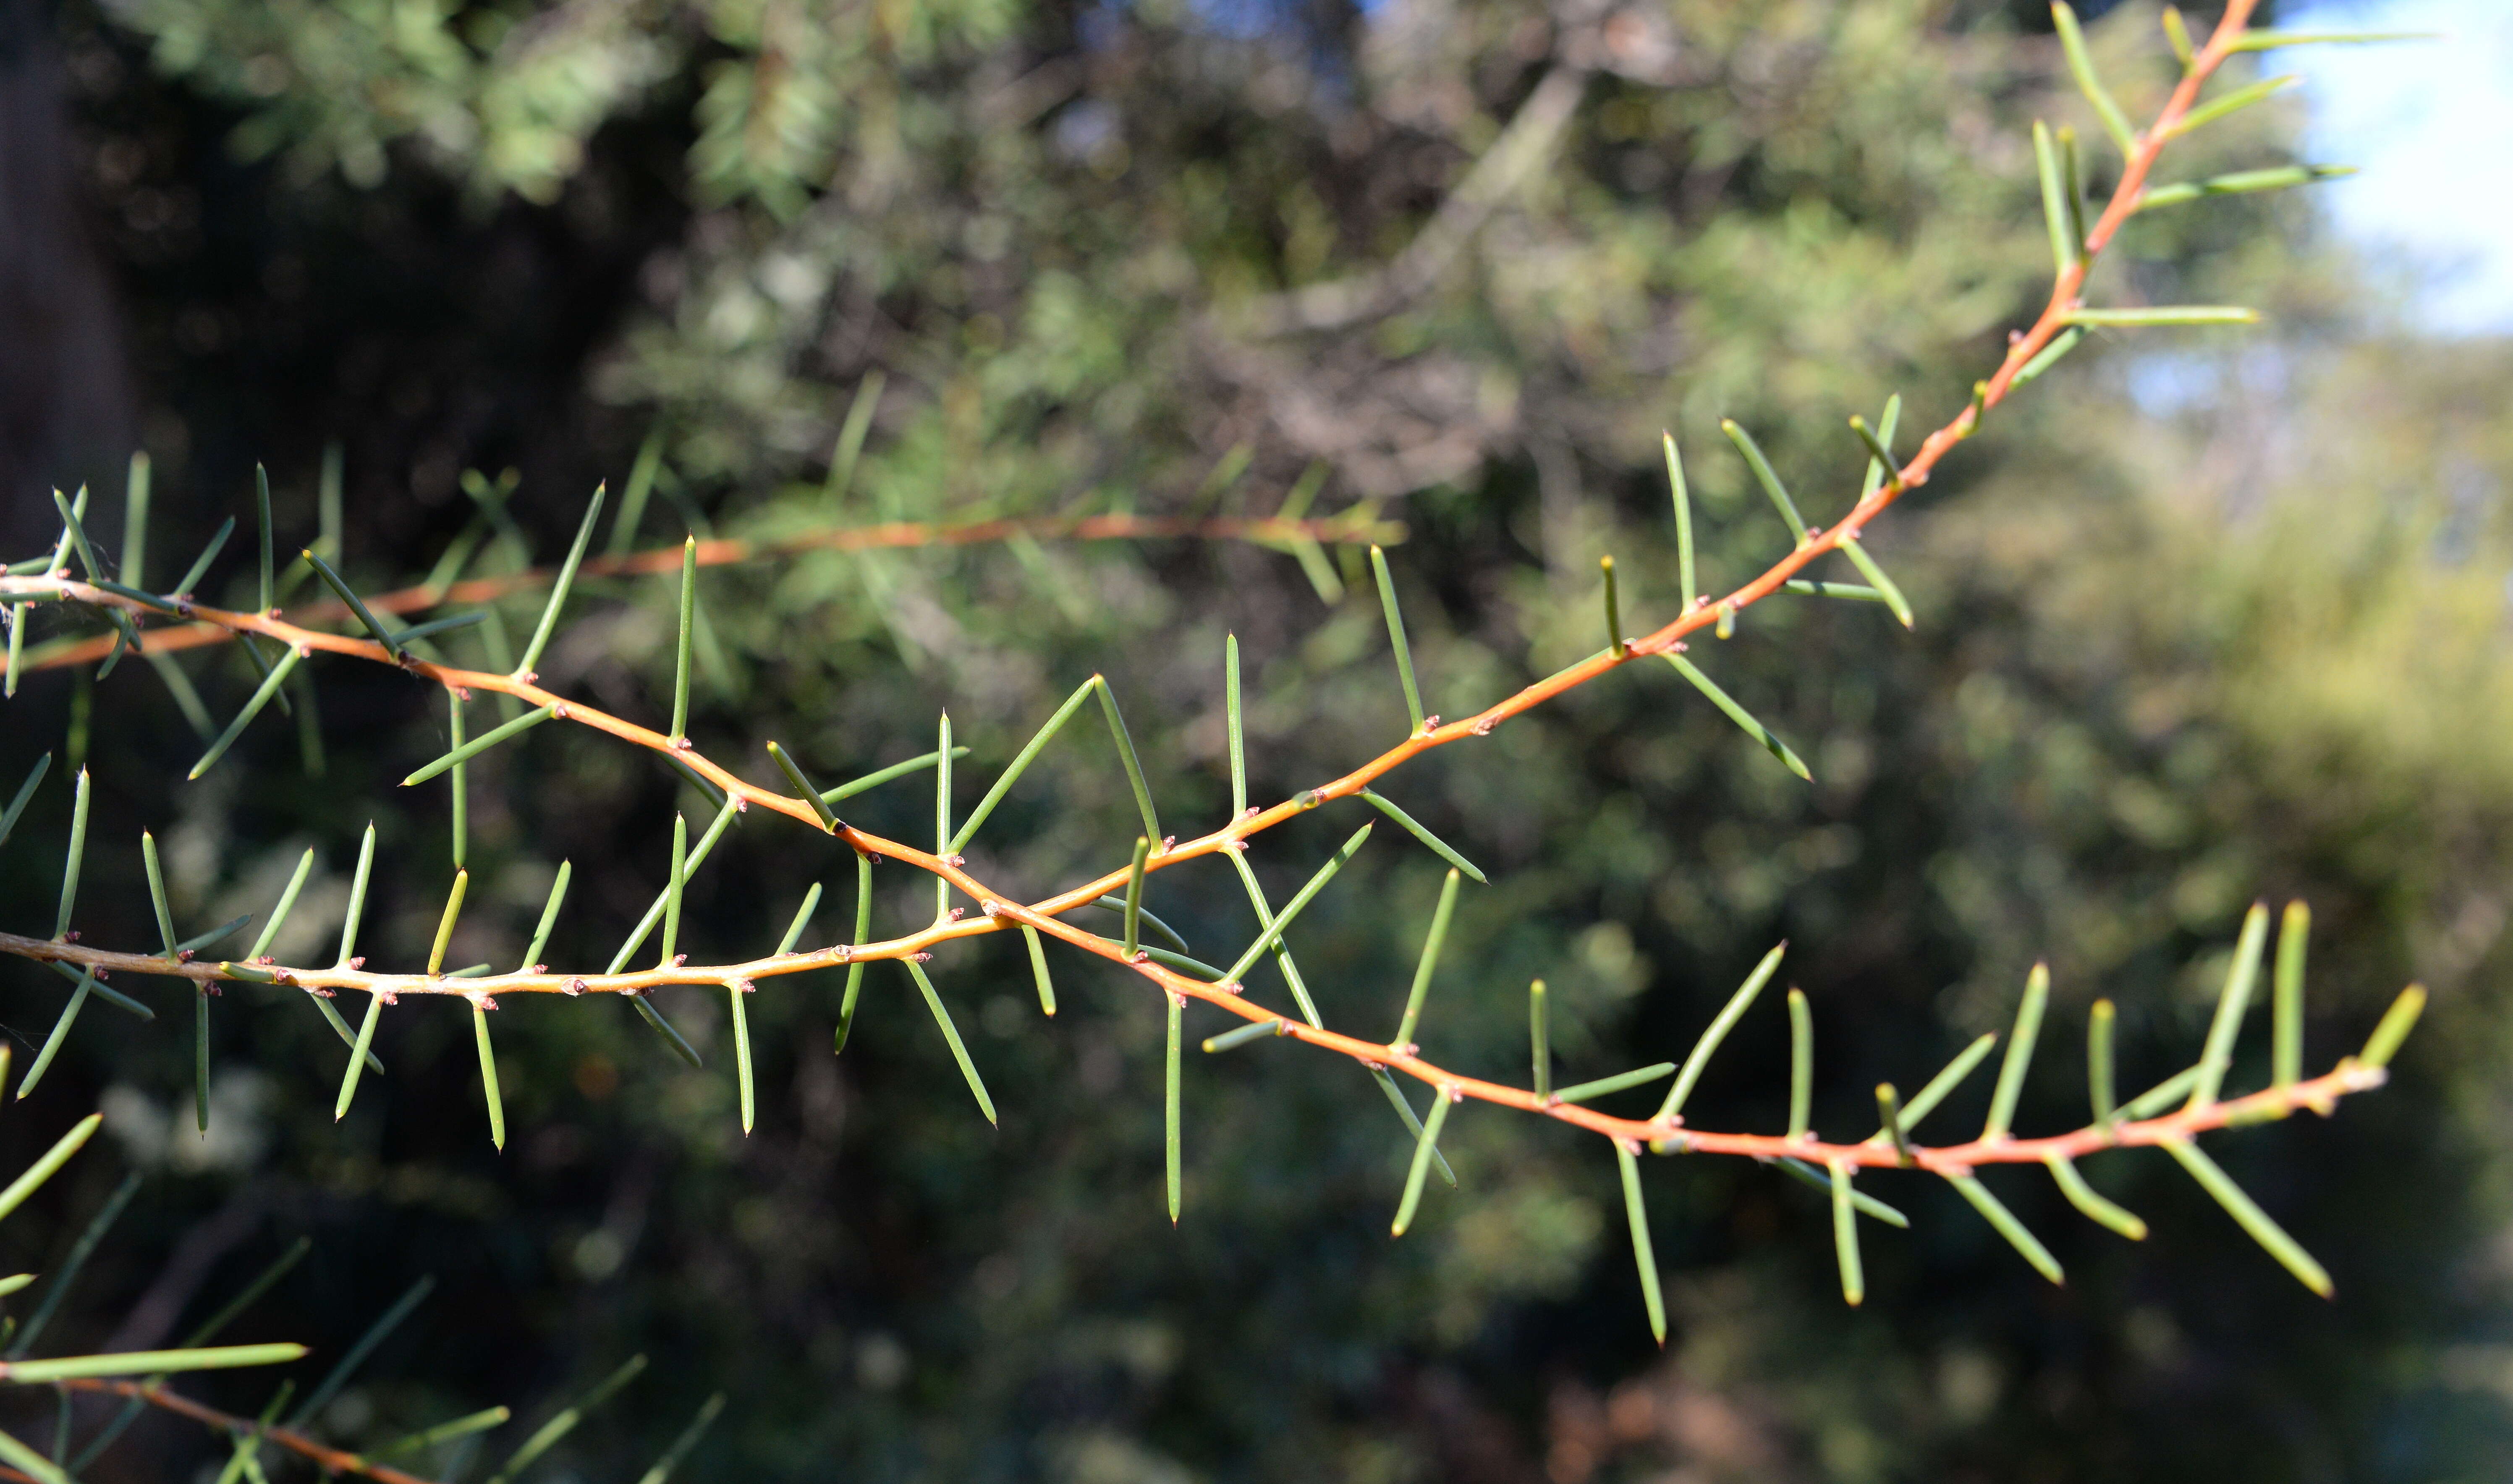 Image of Hakea teretifolia (Salisb.) Britten